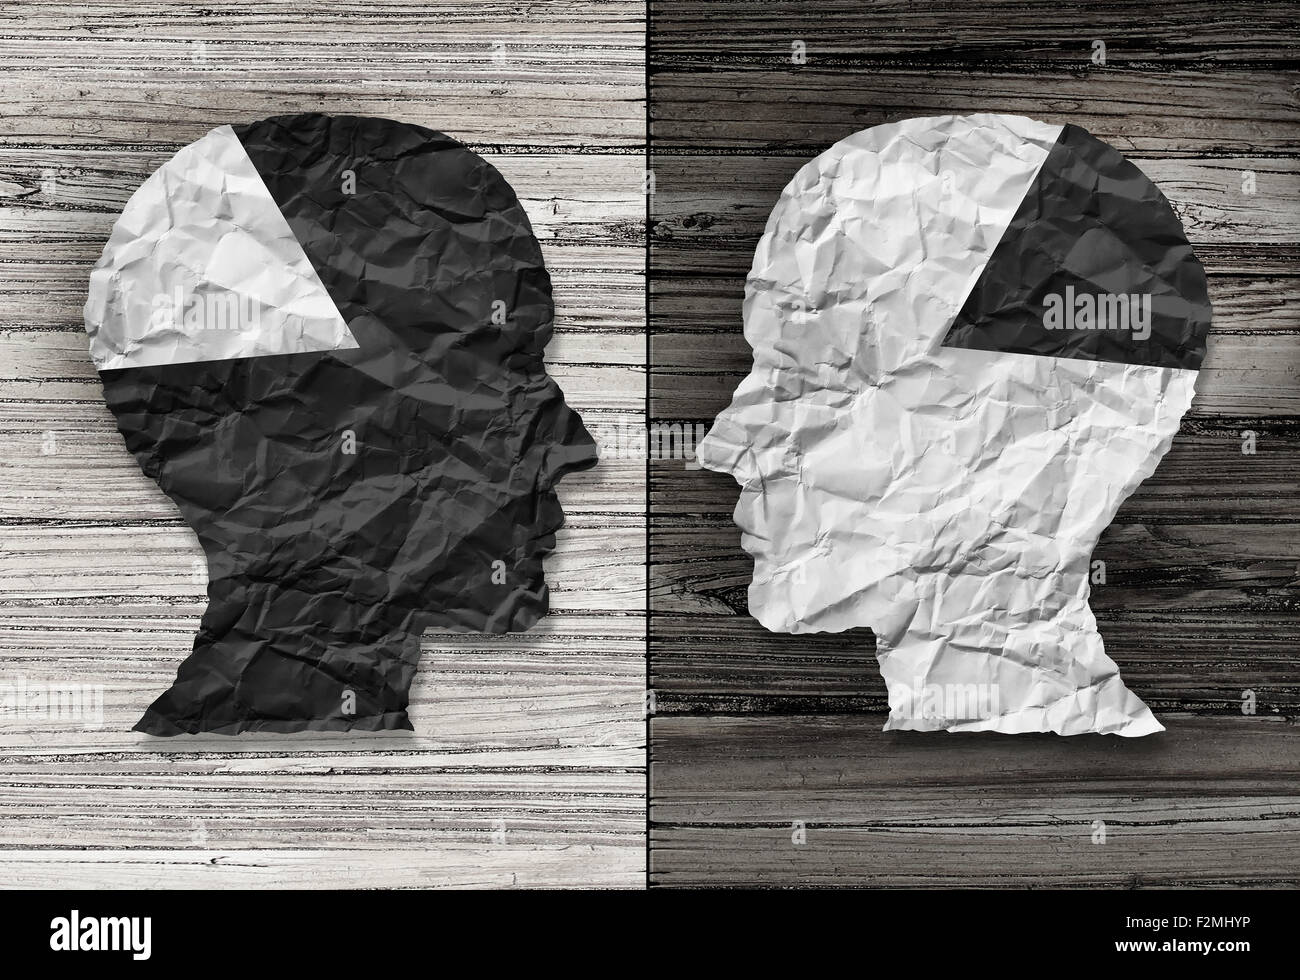 Concept de l'égalité ethnique et raciale symbole de justice comme noir et blanc papier froissé en forme de tête humaine sur de vieux bois rustique Banque D'Images